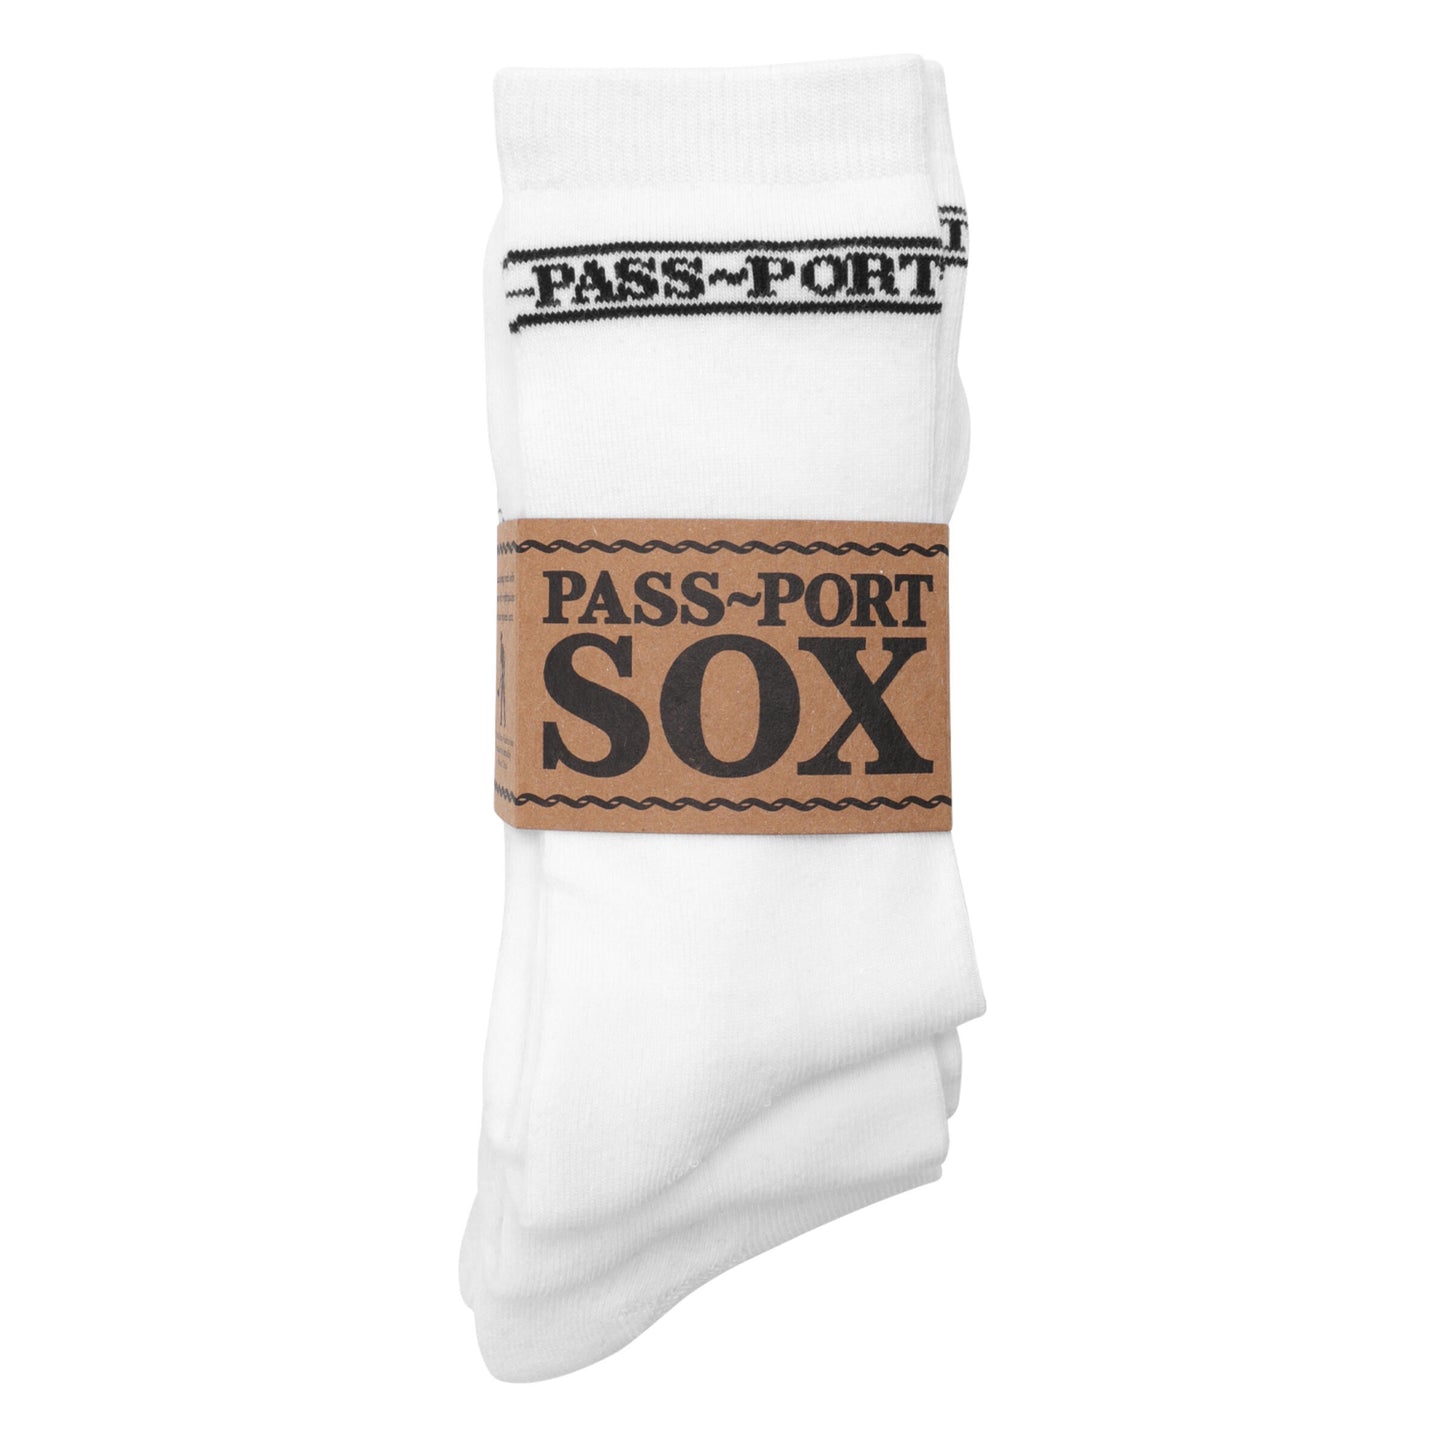 Pass-Port Hi Sox 3 Pack: Assorted Colors